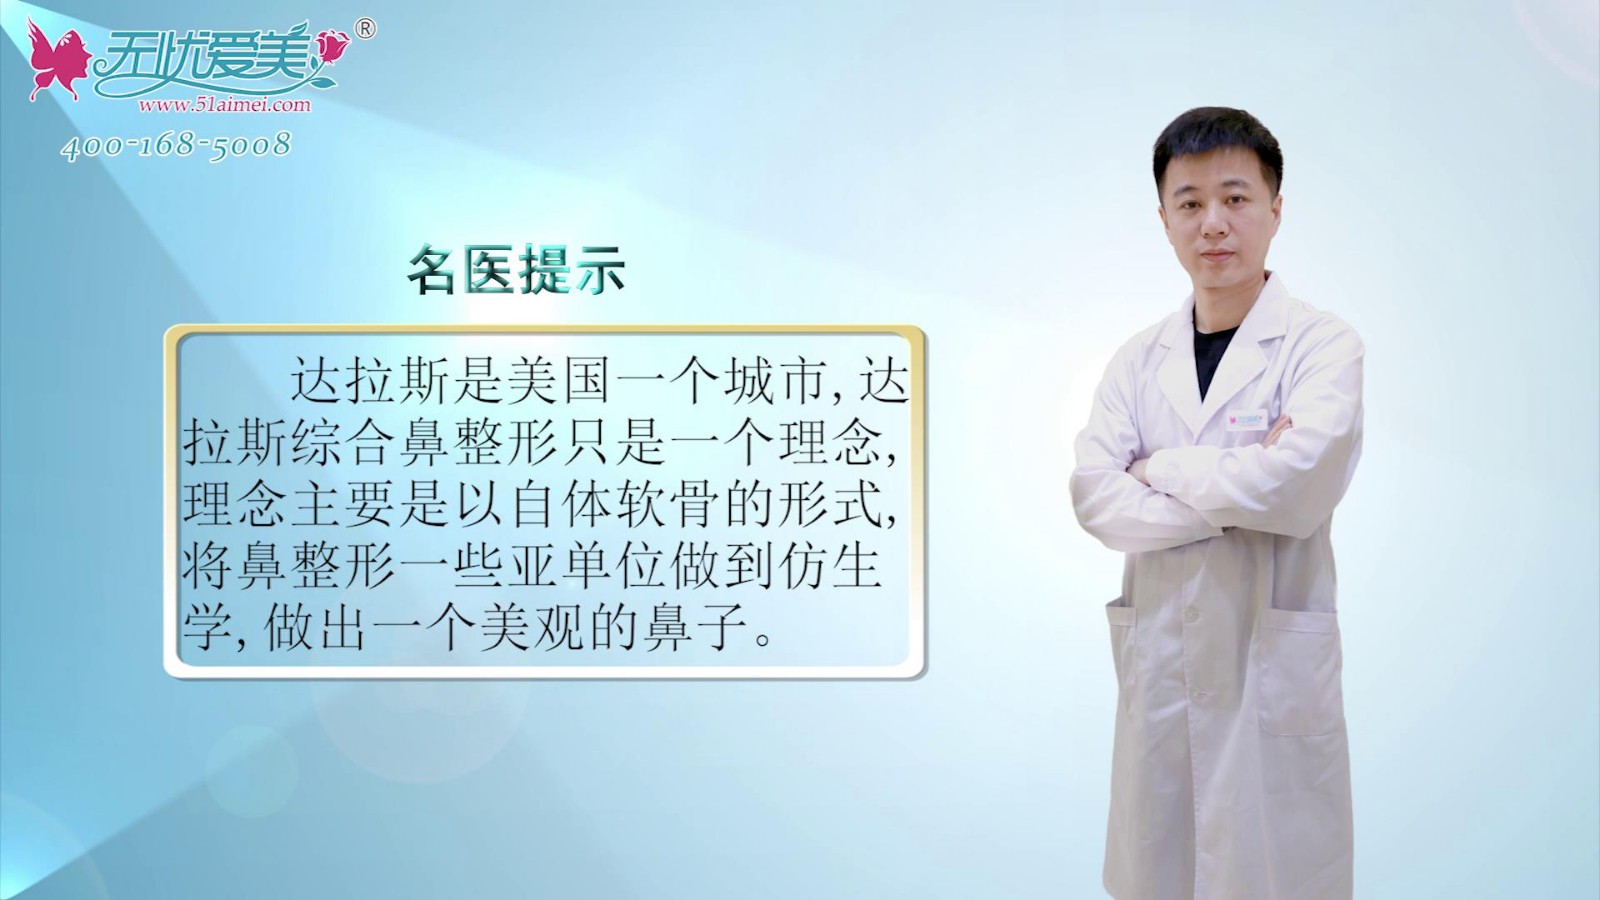 南京鼻祖张哲医生视频在线解答什么是达拉斯综合鼻整形